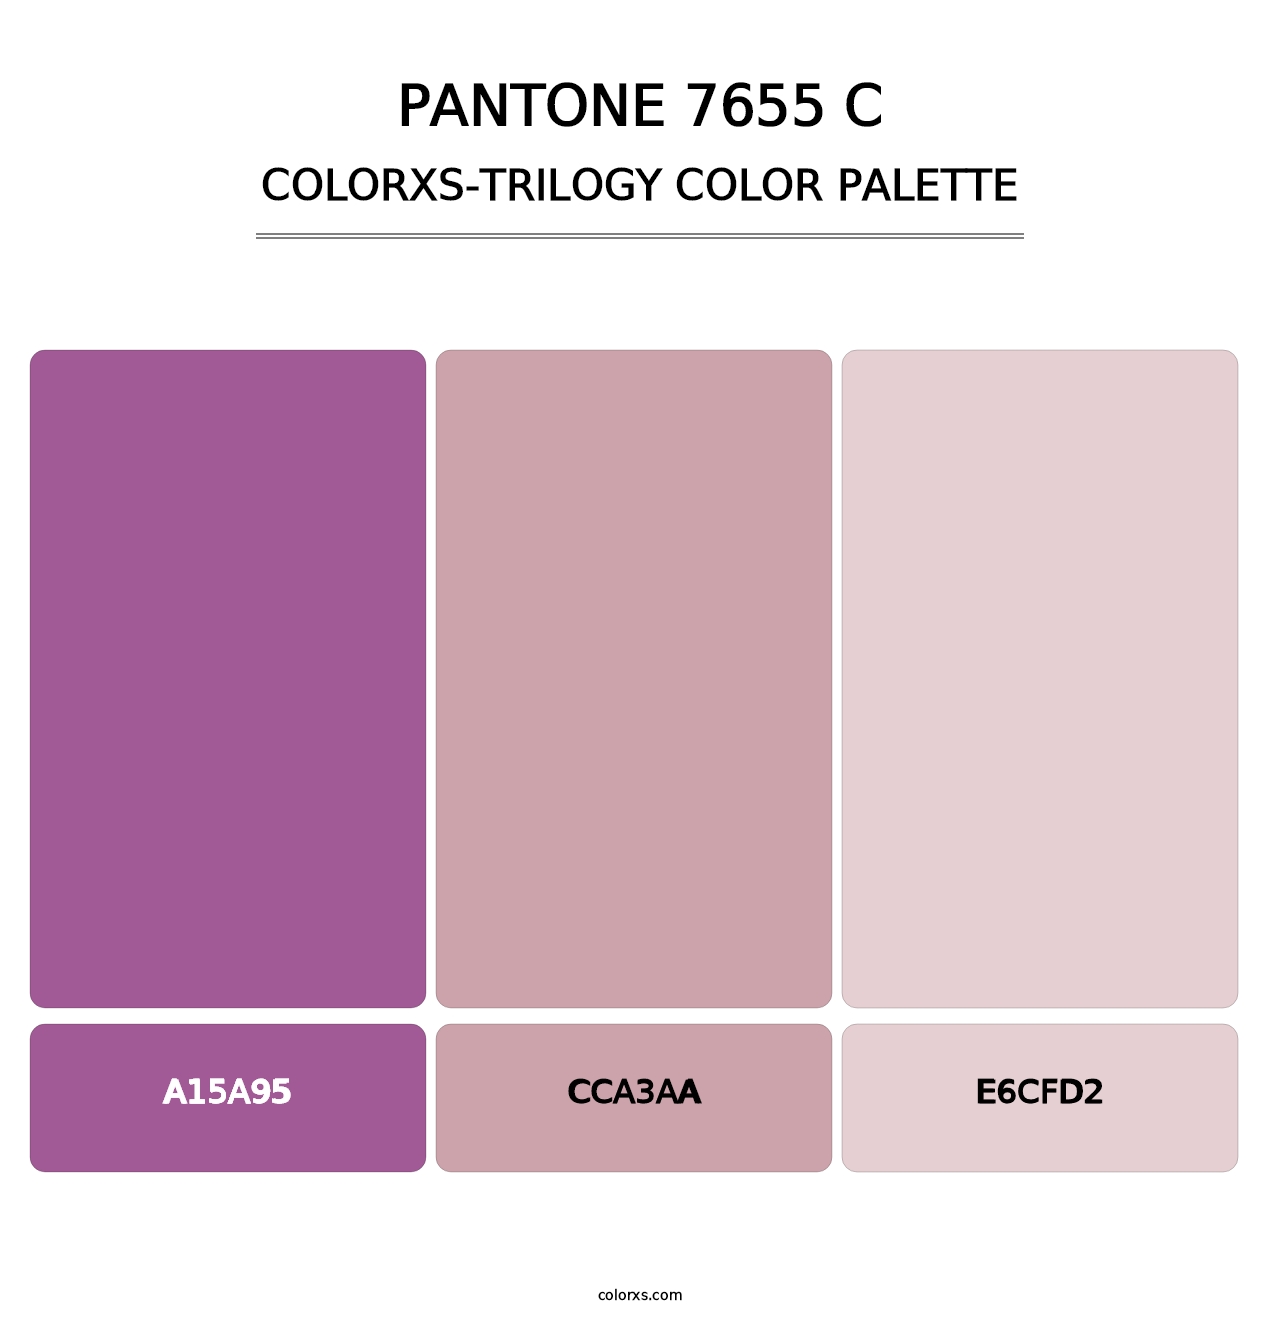 PANTONE 7655 C - Colorxs Trilogy Palette